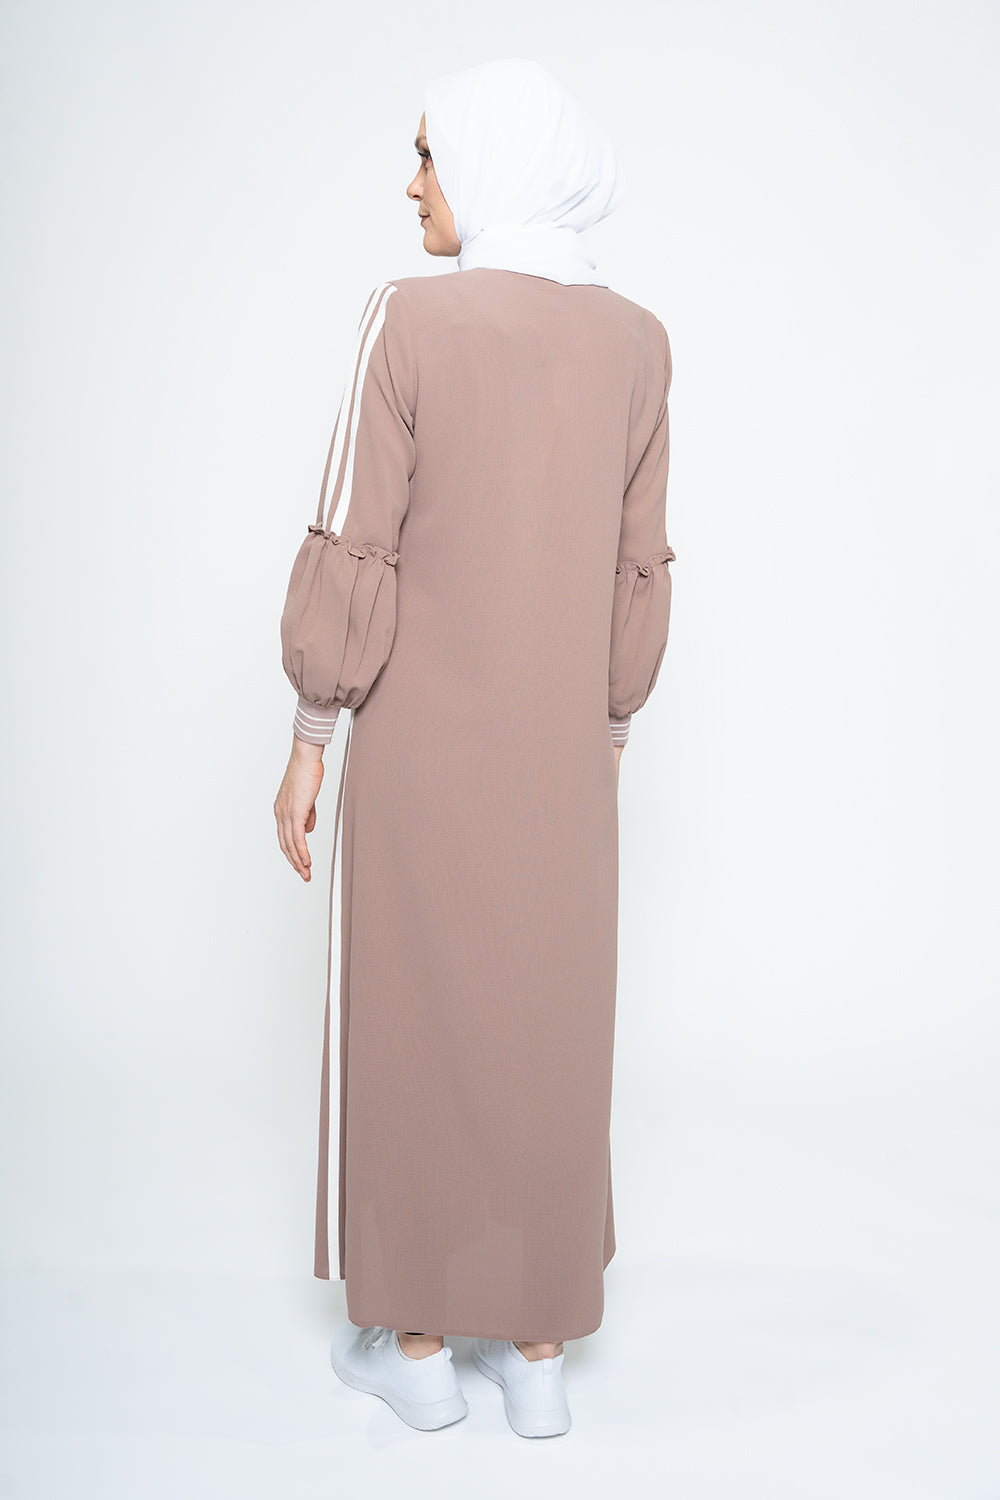 Coral Coast Modest Turkish Jilbab | Dana Fashion